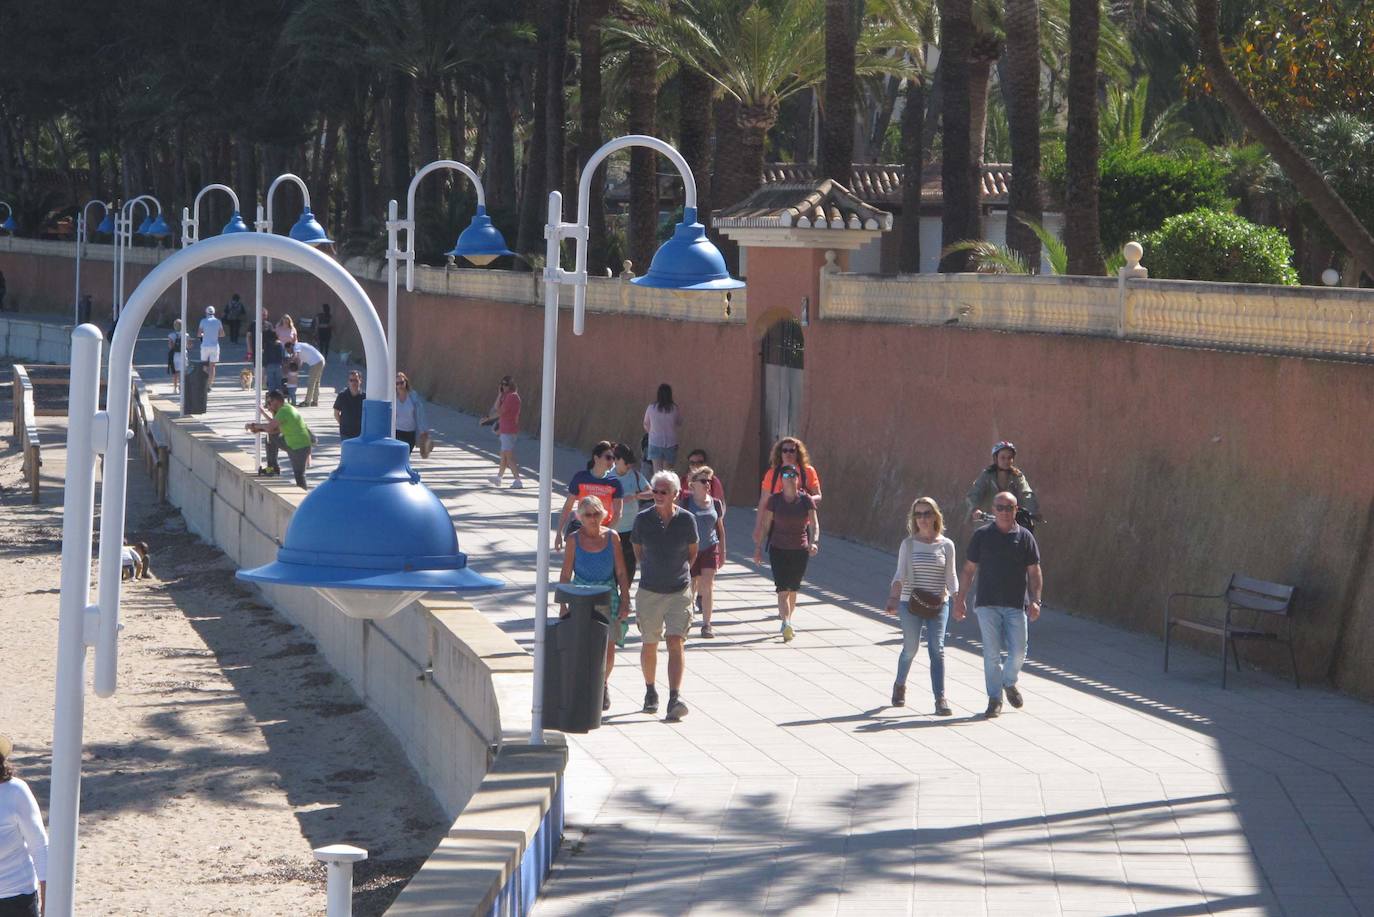 Imagen secundaria 1 - Gente de paseo durante este fin de semana en la Marineta, el Raset y la playa del Arenal de Xàbia.